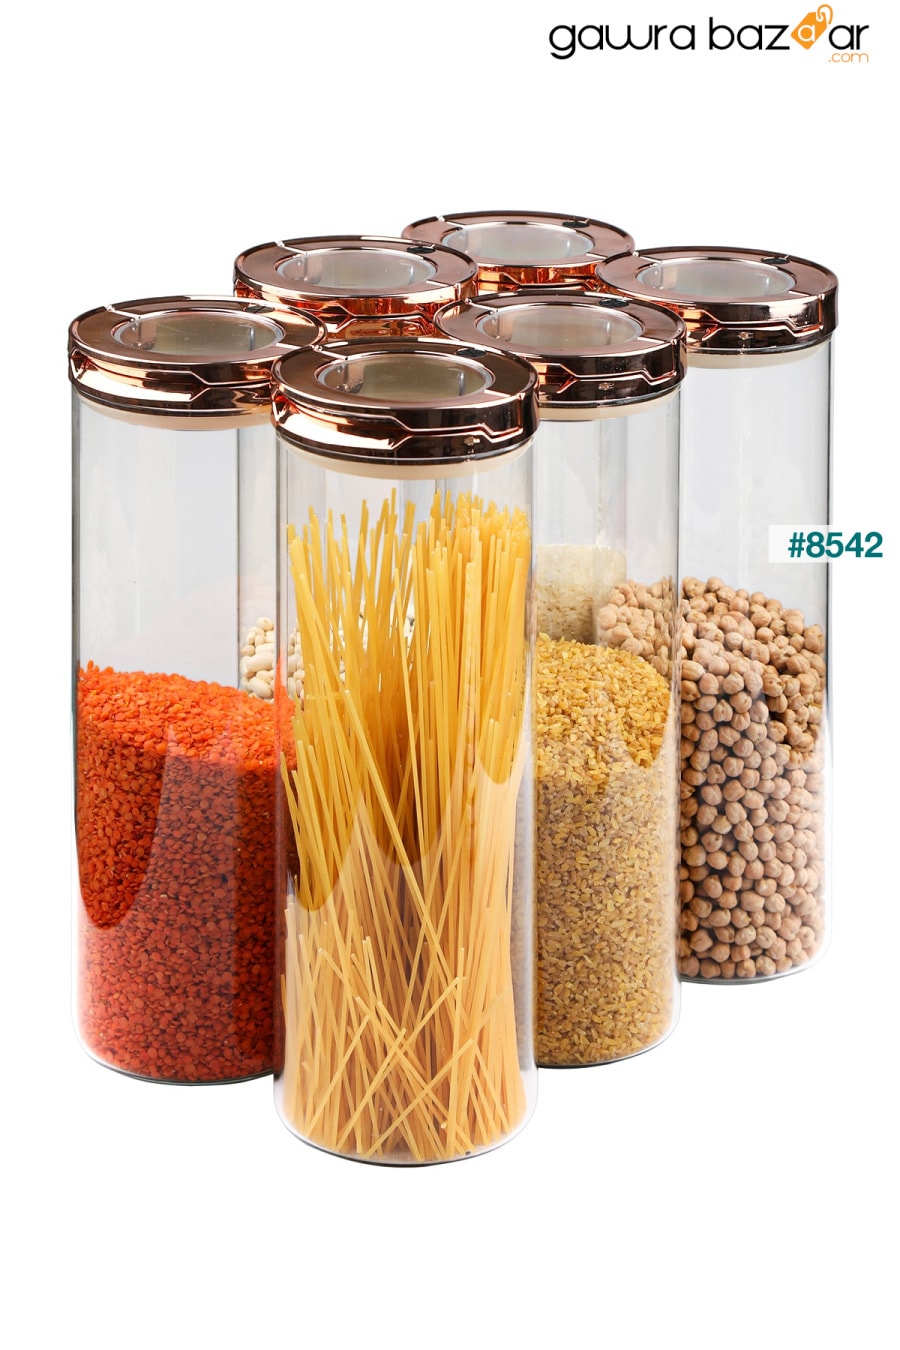 6 عبوات 2550 مل Xxxl حافظات طعام من زجاج البورسليكات المفرغ (غطاء متعدد الوظائف قابل للتعديل) Karçiçeği Home 3